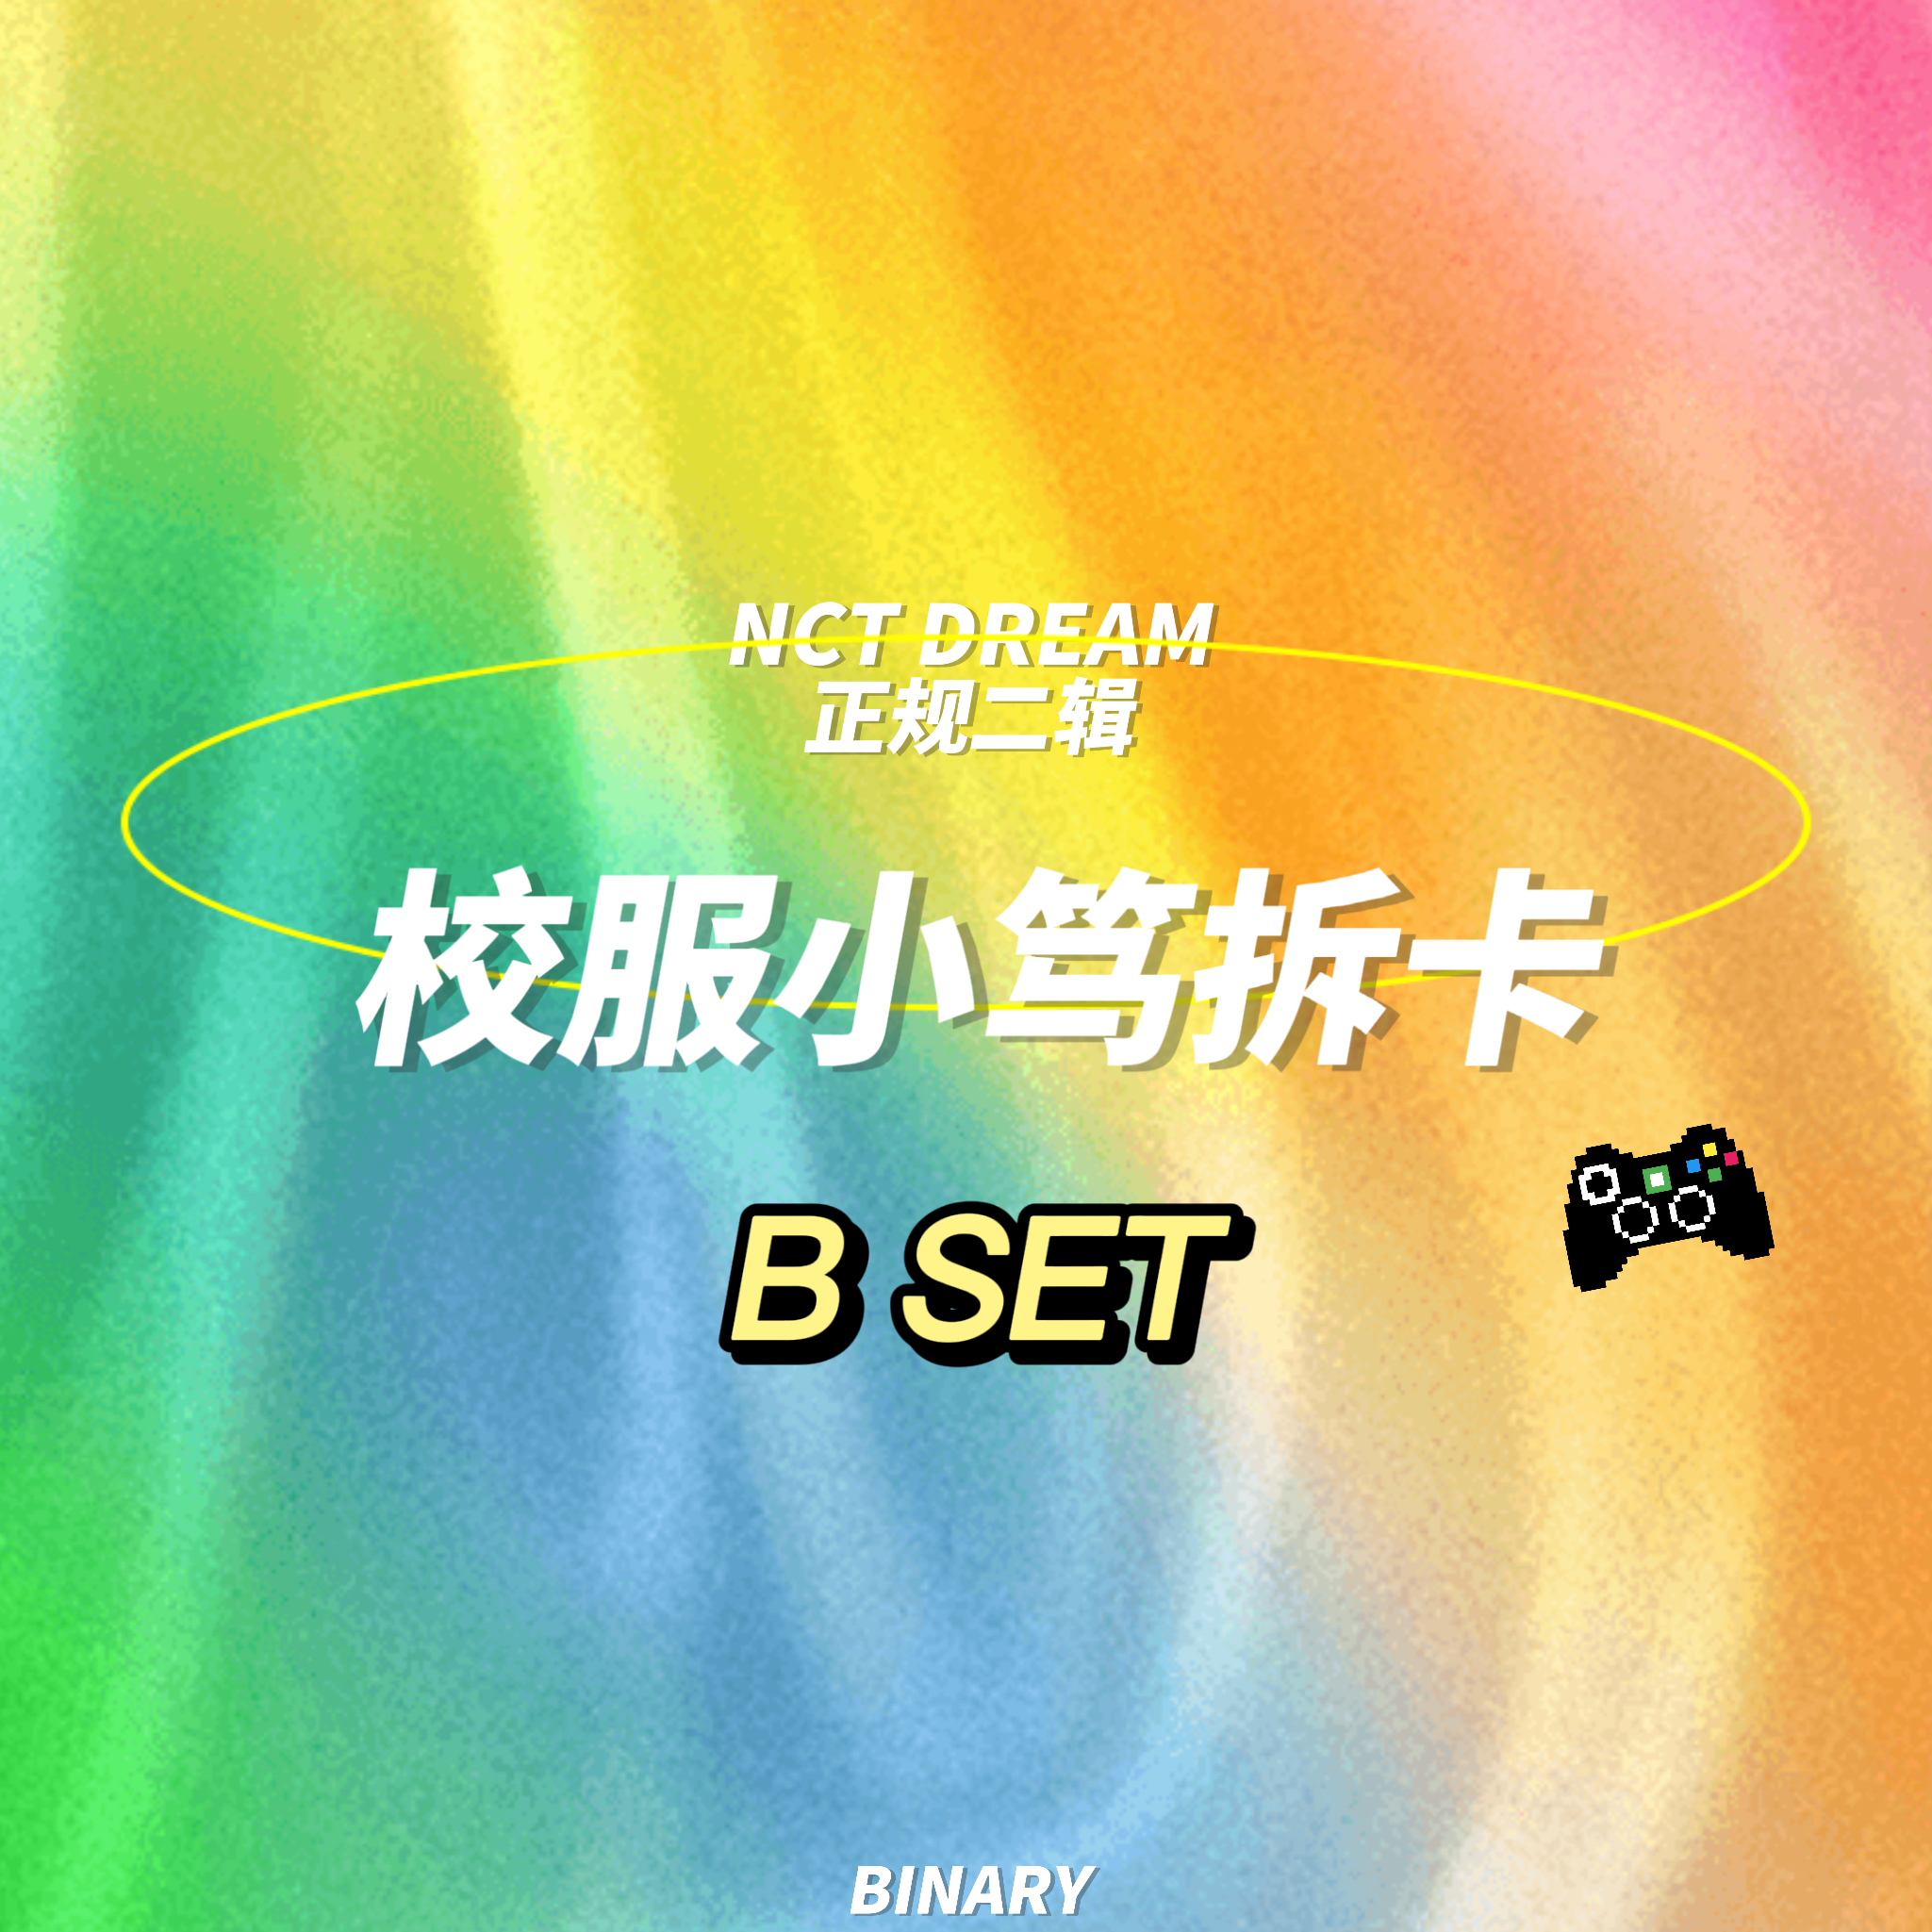 [拆卡专 校服小笃特典Bset] NCT DREAM - 正规2辑 [Glitch Mode] (写真集版本)_Binary_诺民博物志